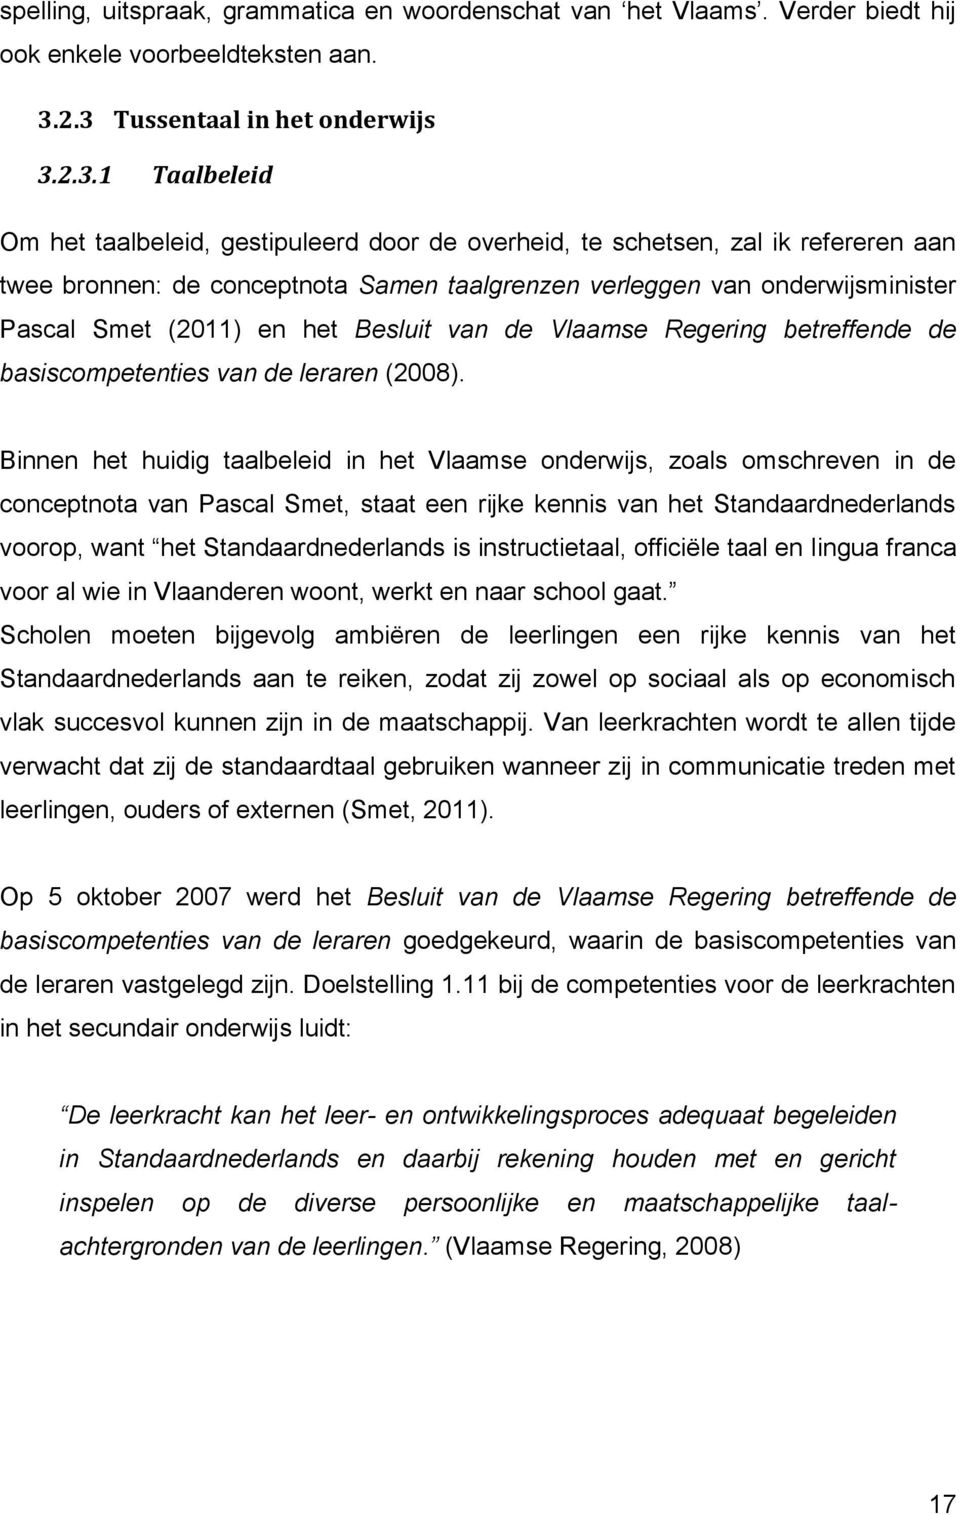 onderwijsminister Pascal Smet (2011) en het Besluit van de Vlaamse Regering betreffende de basiscompetenties van de leraren (2008).